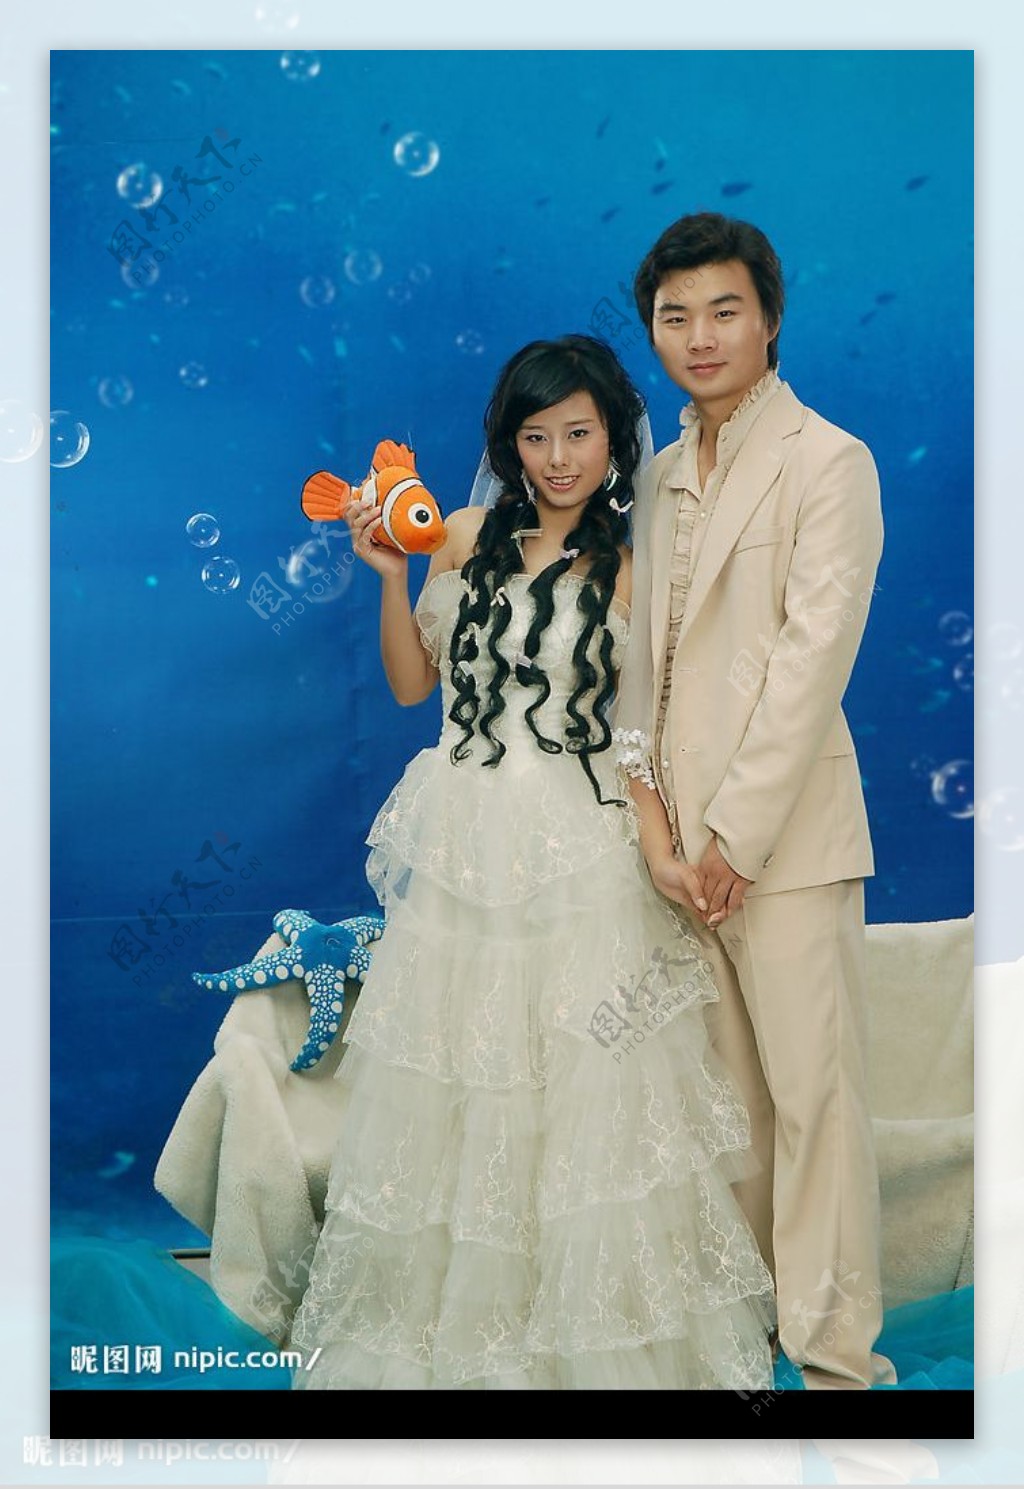 海底之恋婚纱主题图片